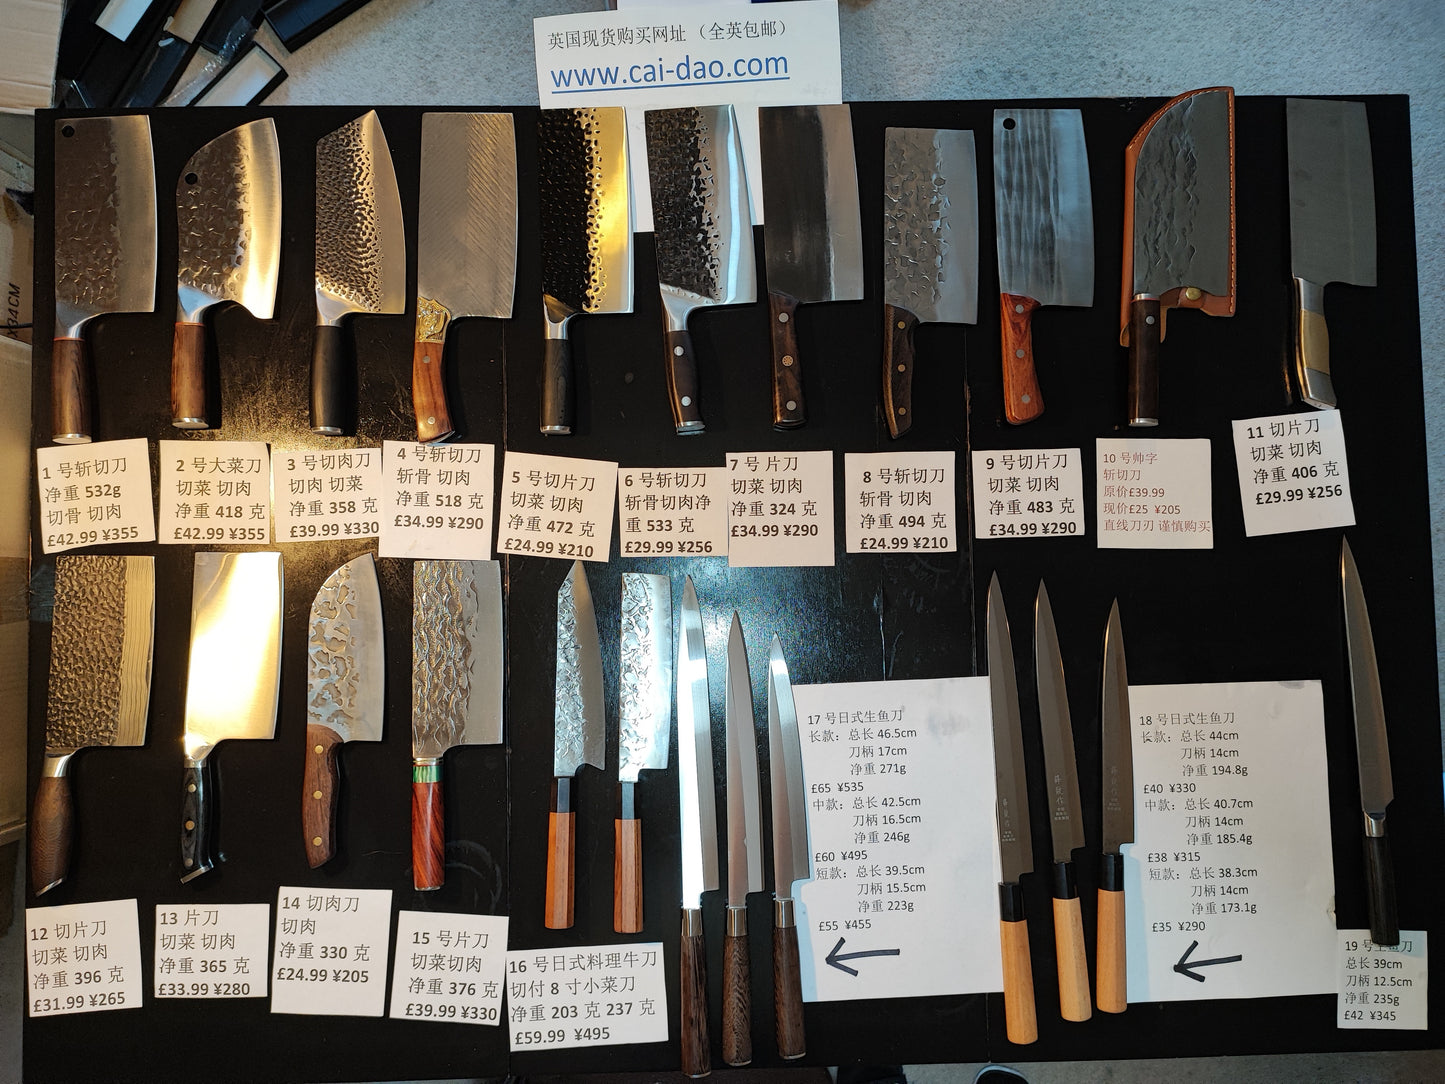 3号切肉刀(轻)(中式刀切菜切肉)Chinese kitchen knives